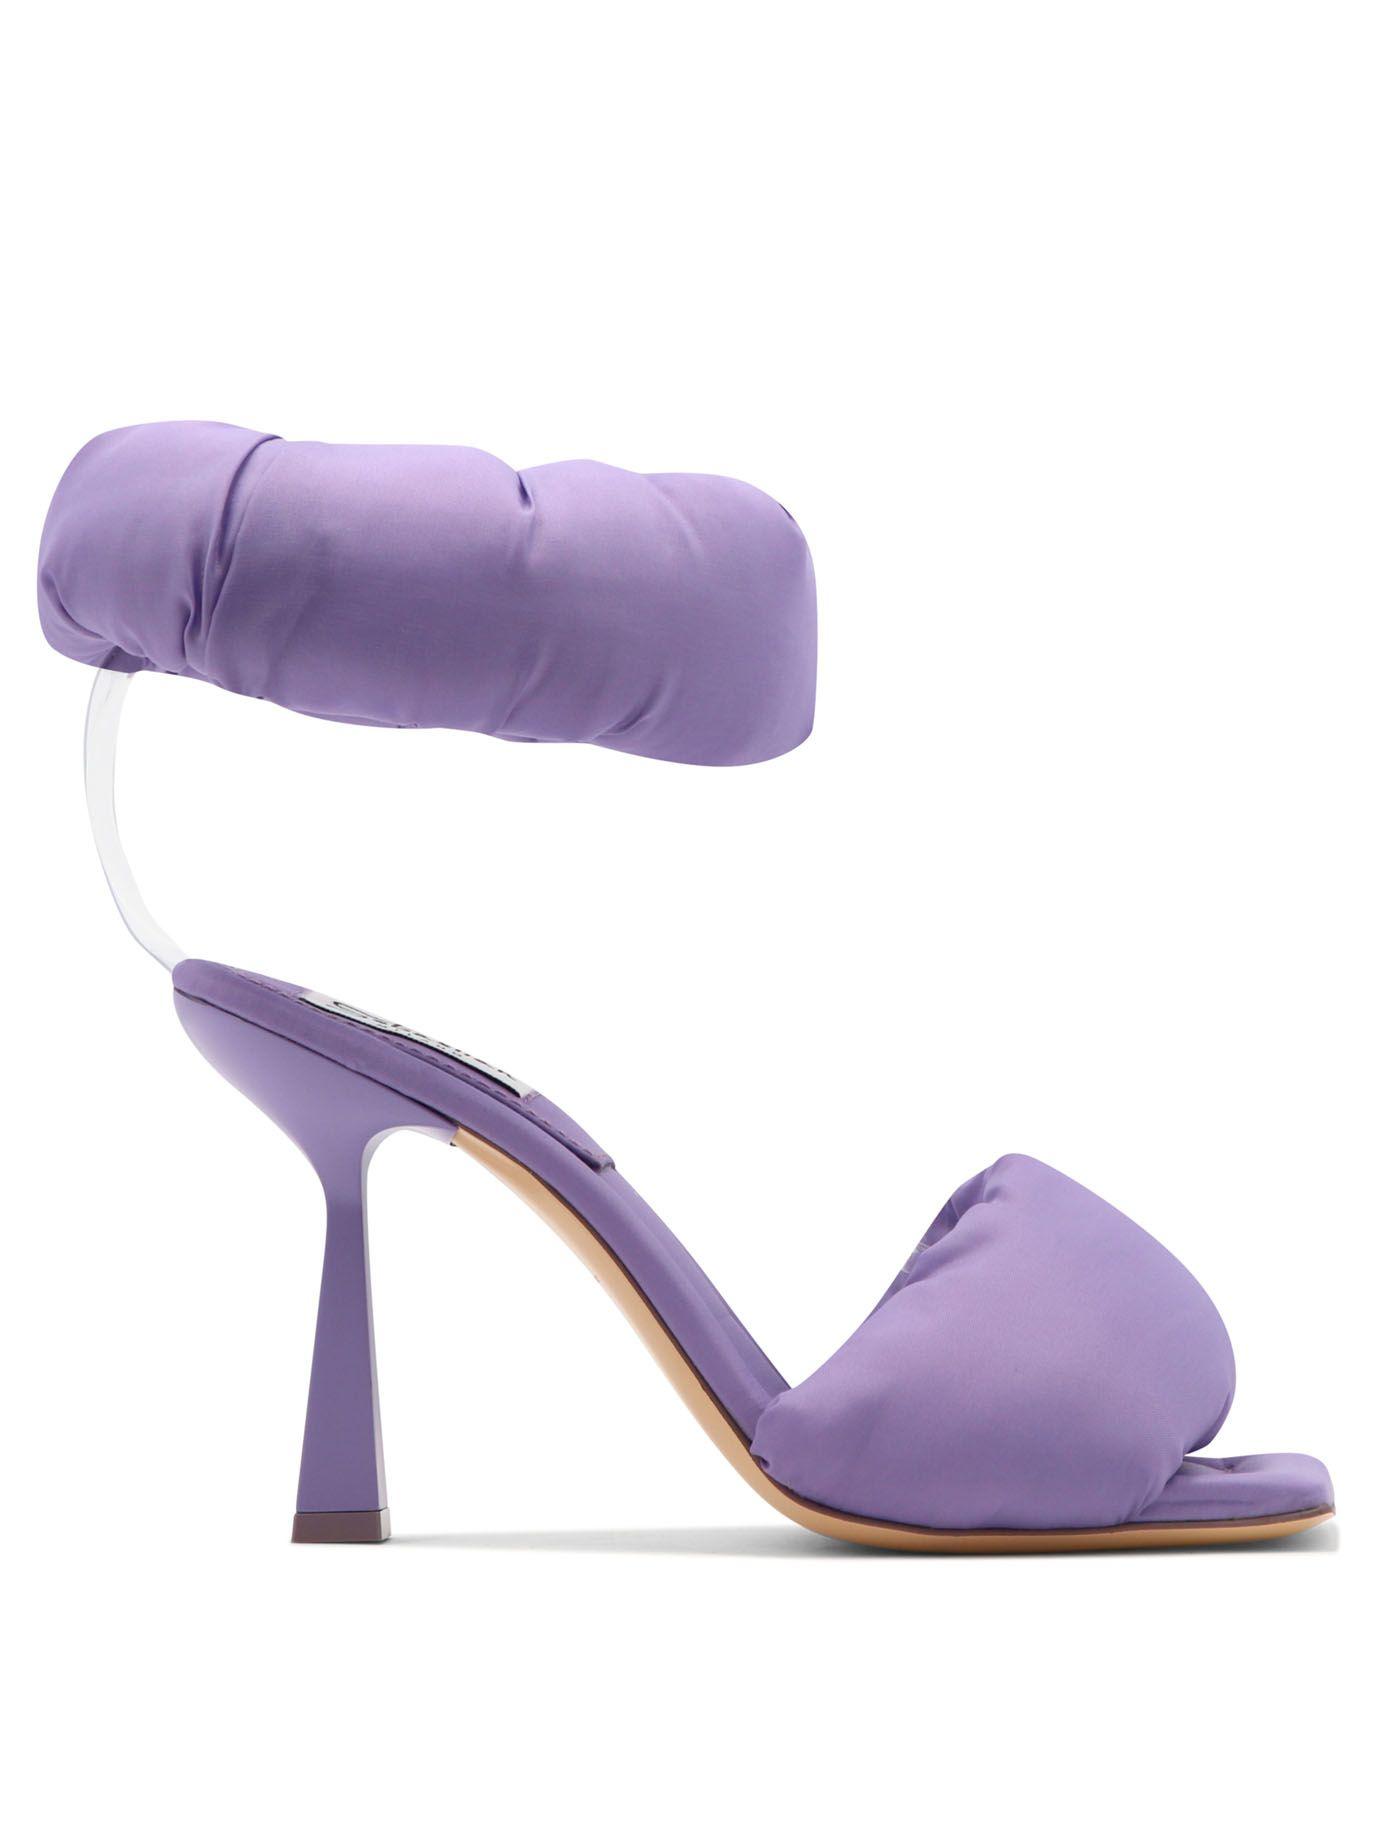 Atterley Women Shoes Sandals Sandals Purple 